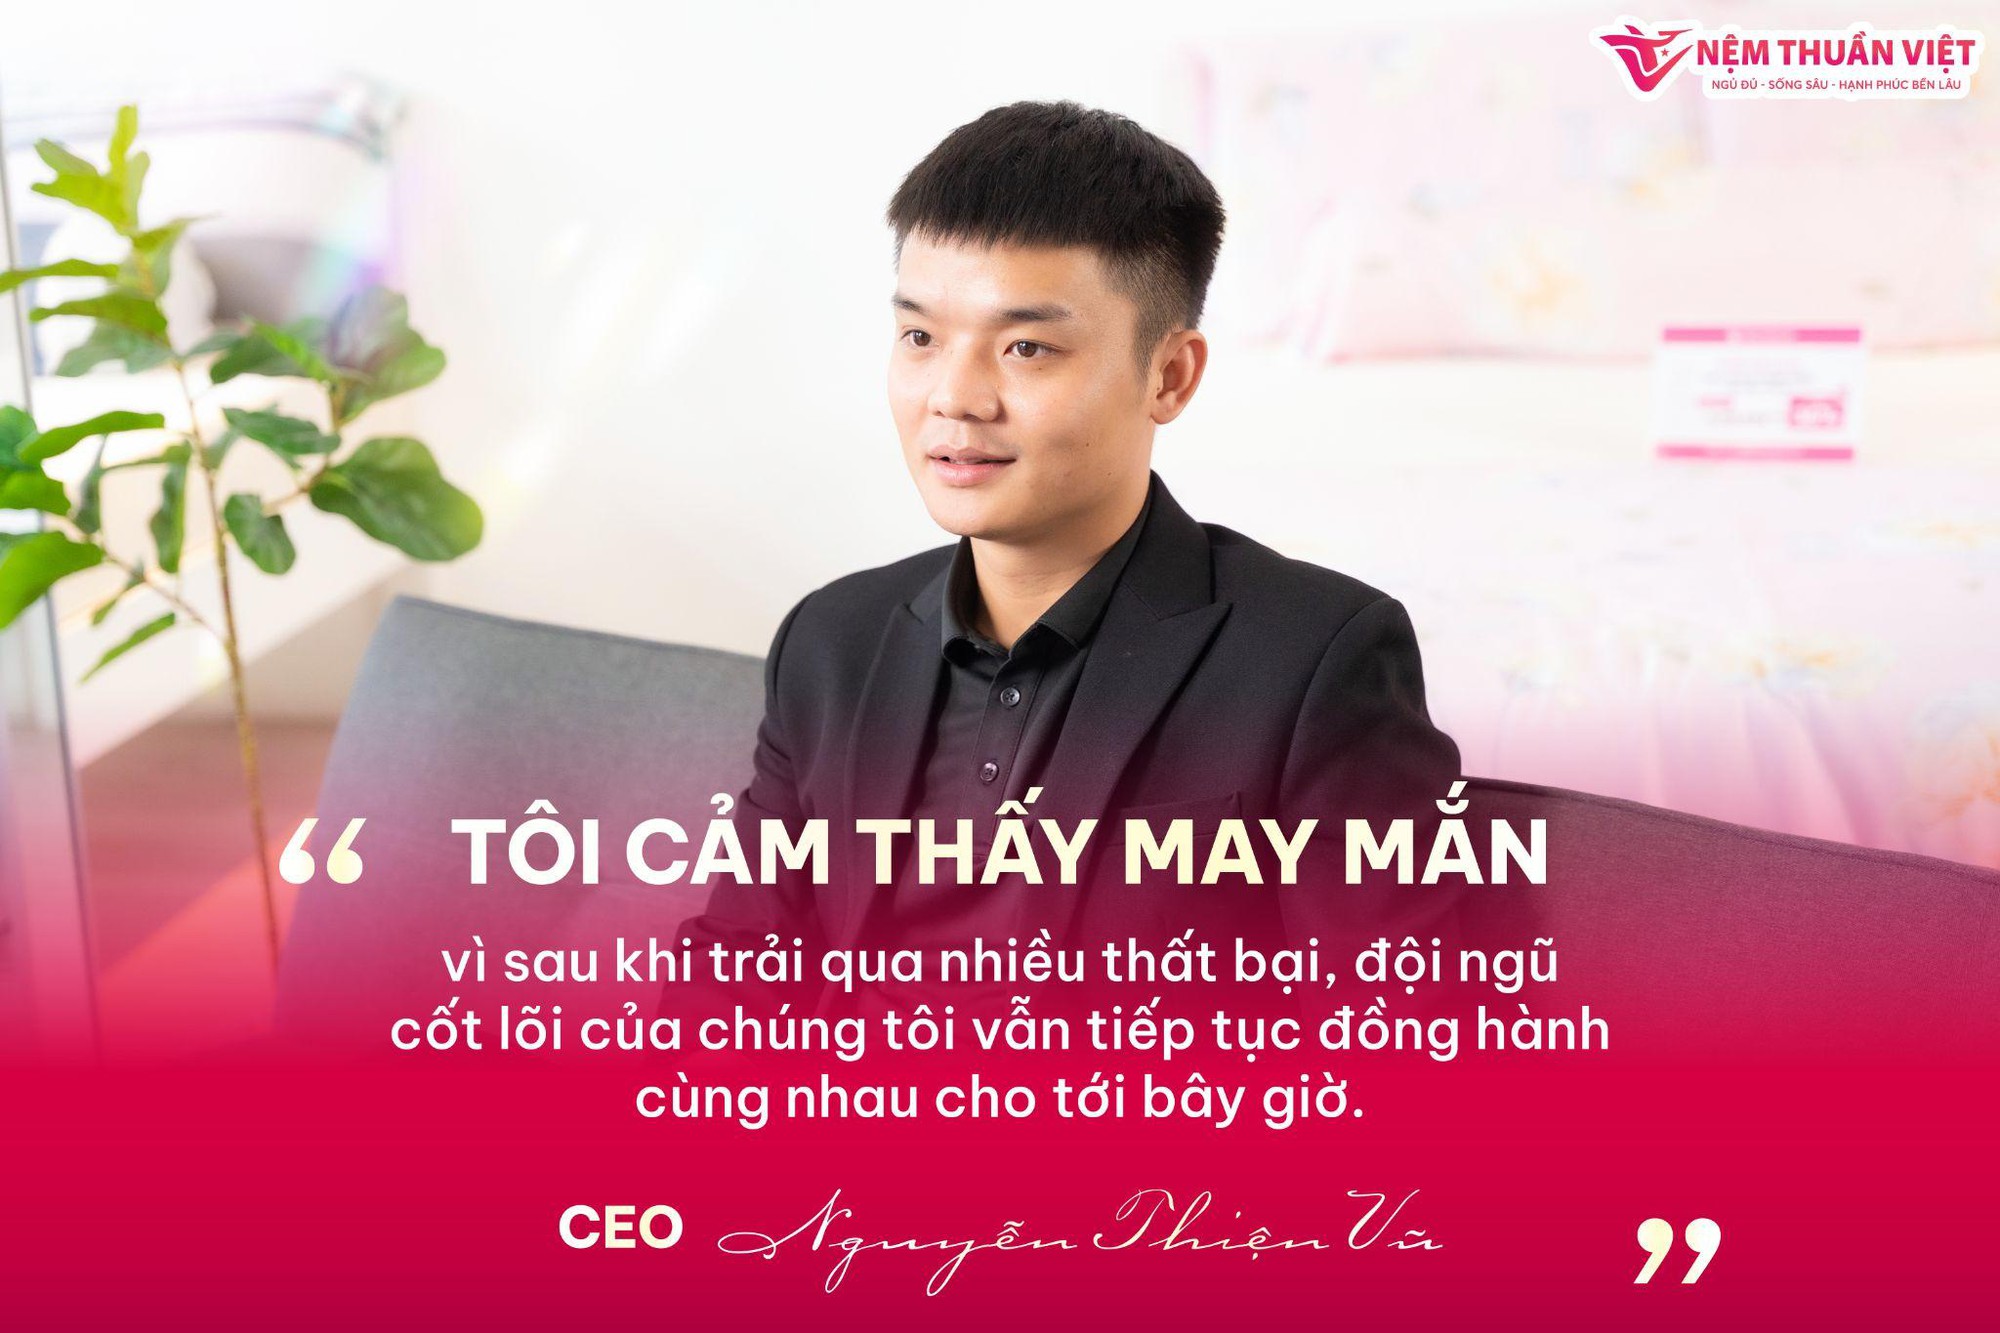 Nệm Thuần Việt sở hữu ban lãnh đạo đầy tài năng với CEO chỉ mới 26 tuổi - Ảnh 6.